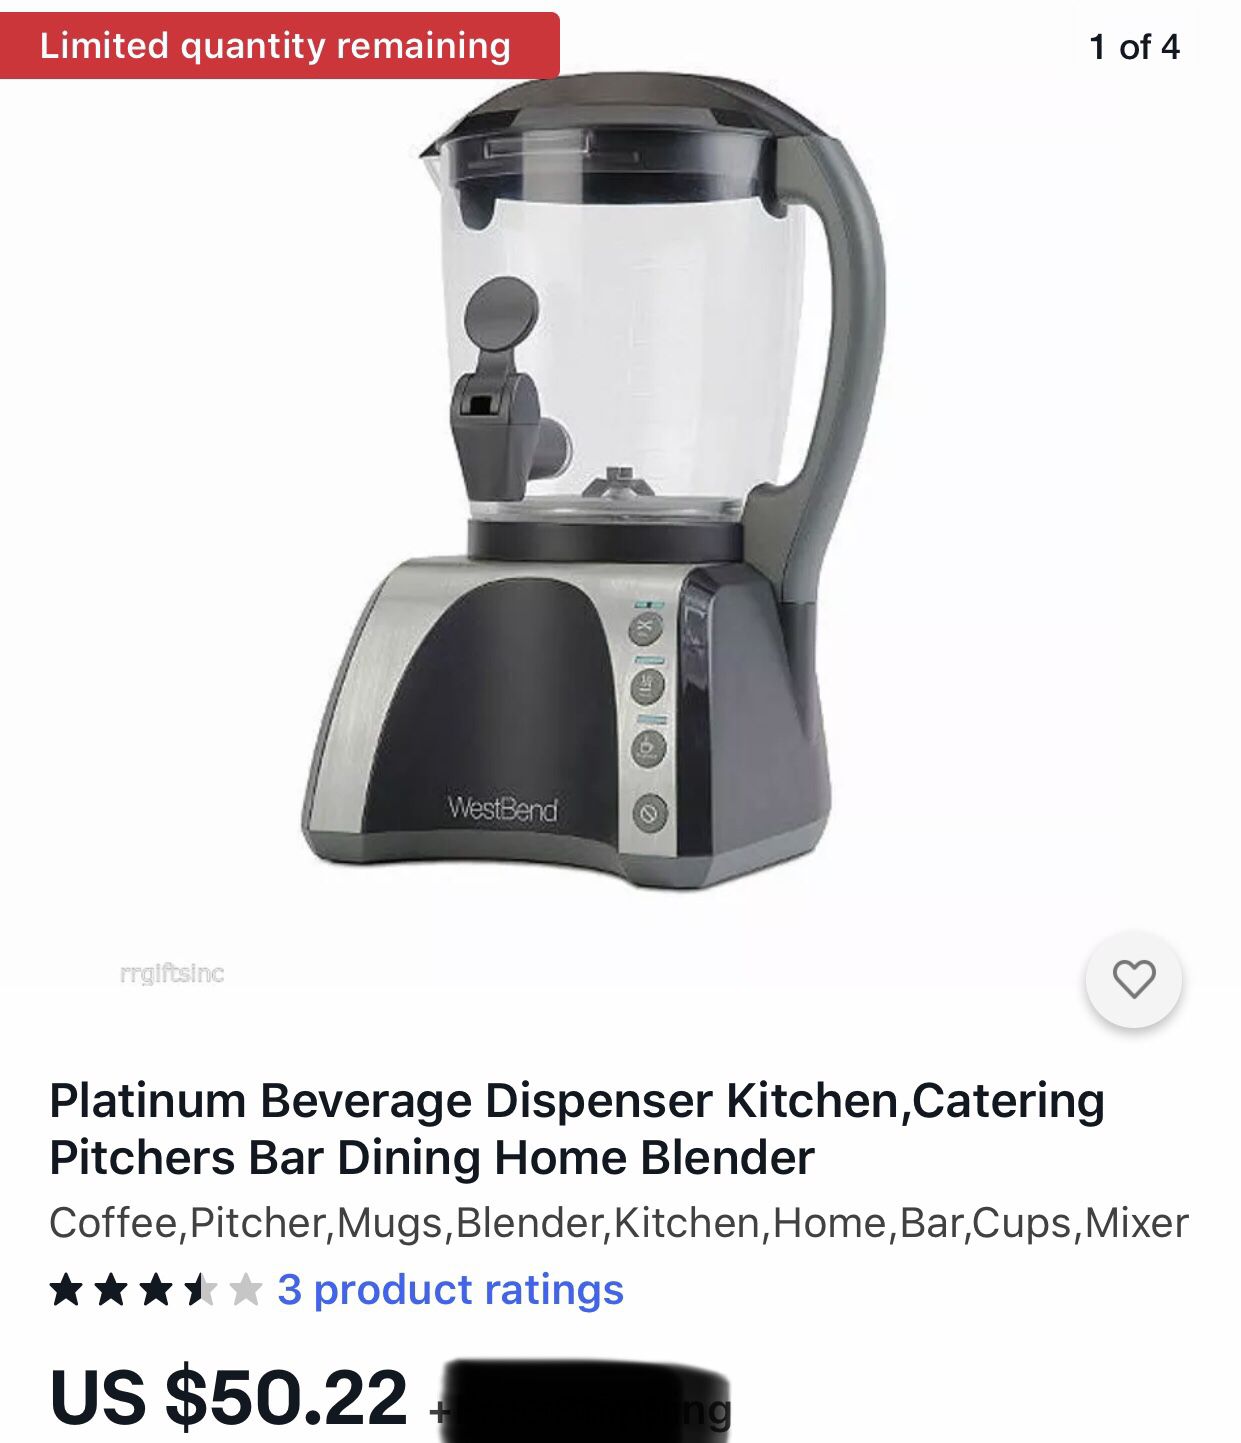 Platinum Beverage Dispenser Kitchen,Catering Pitchers Bar Dining Home Blender